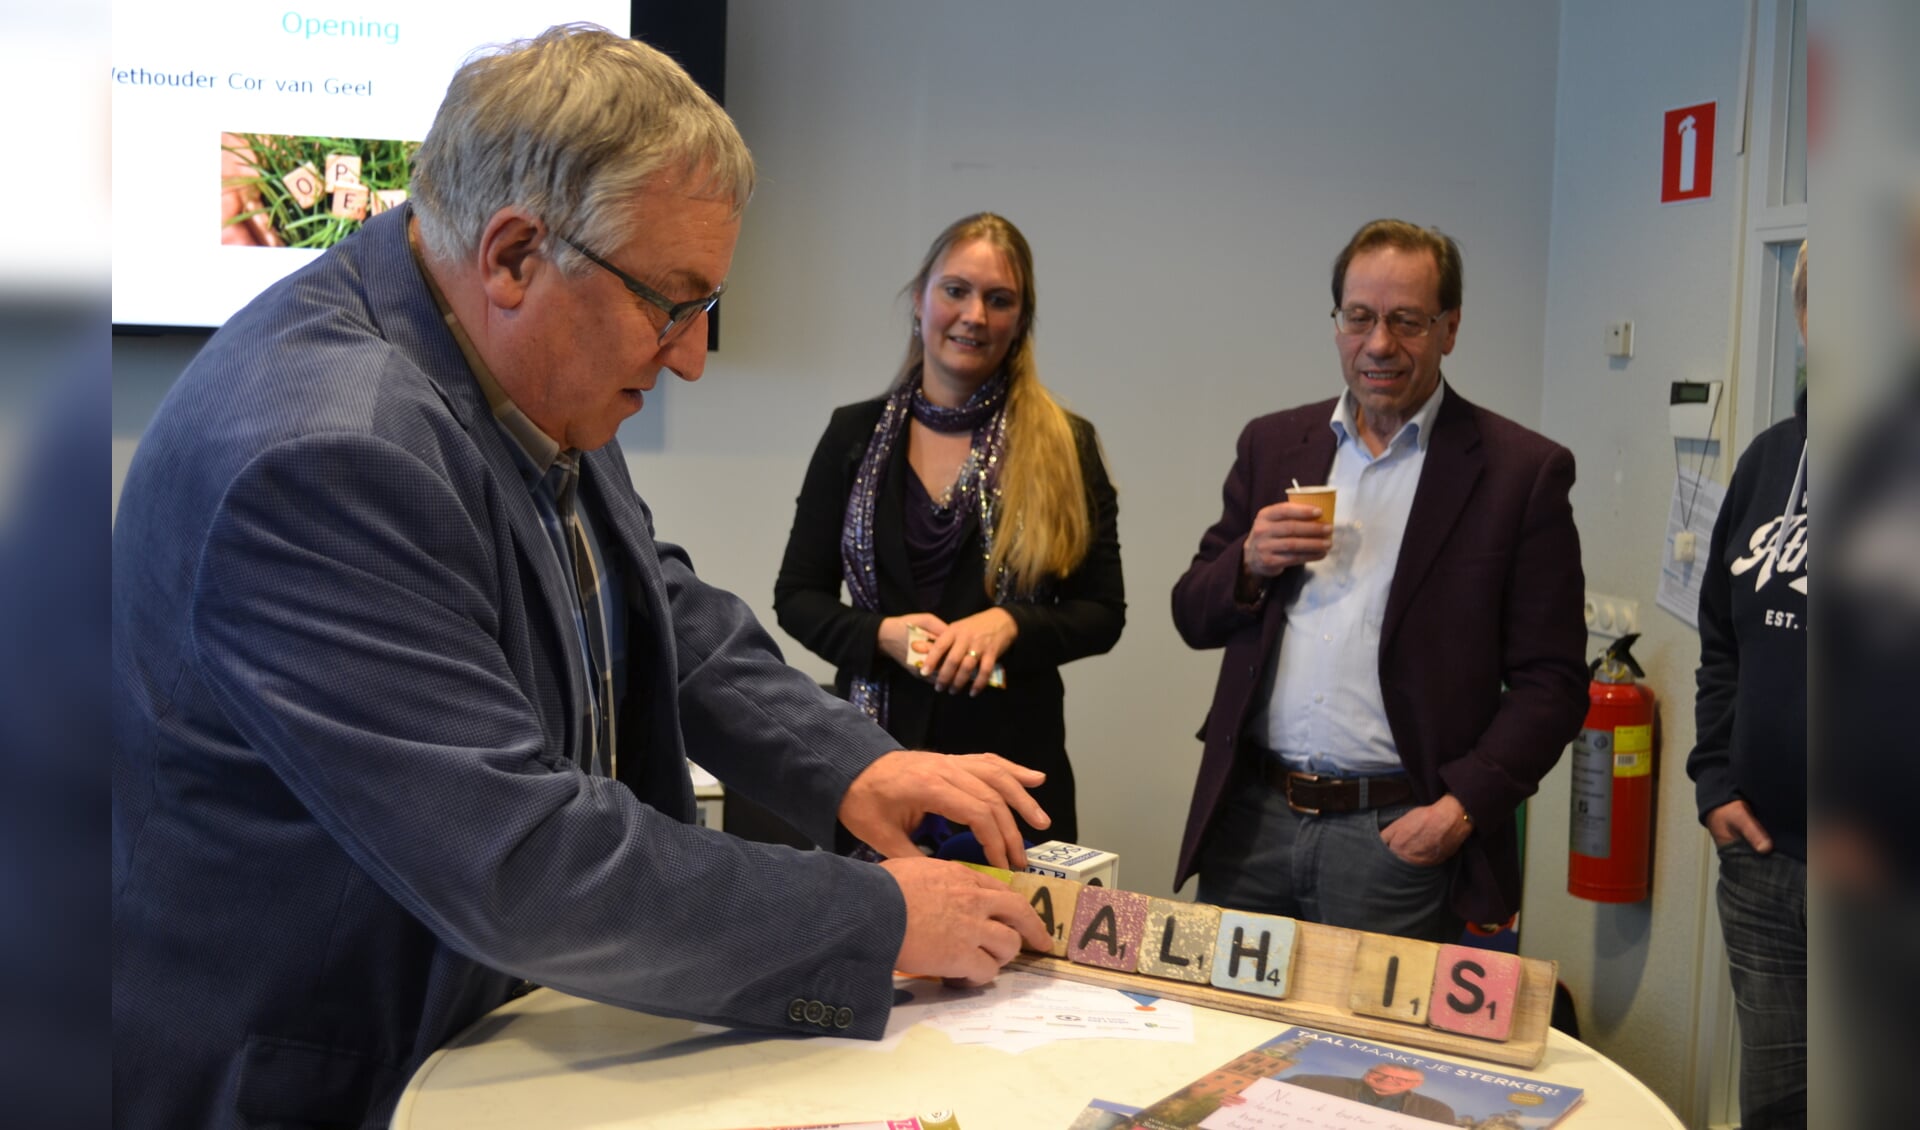 Wethouder Cor van Geel opende het Taalhuis door het woord te spellen op een taalplankje FOTO REMKO VERMUNT